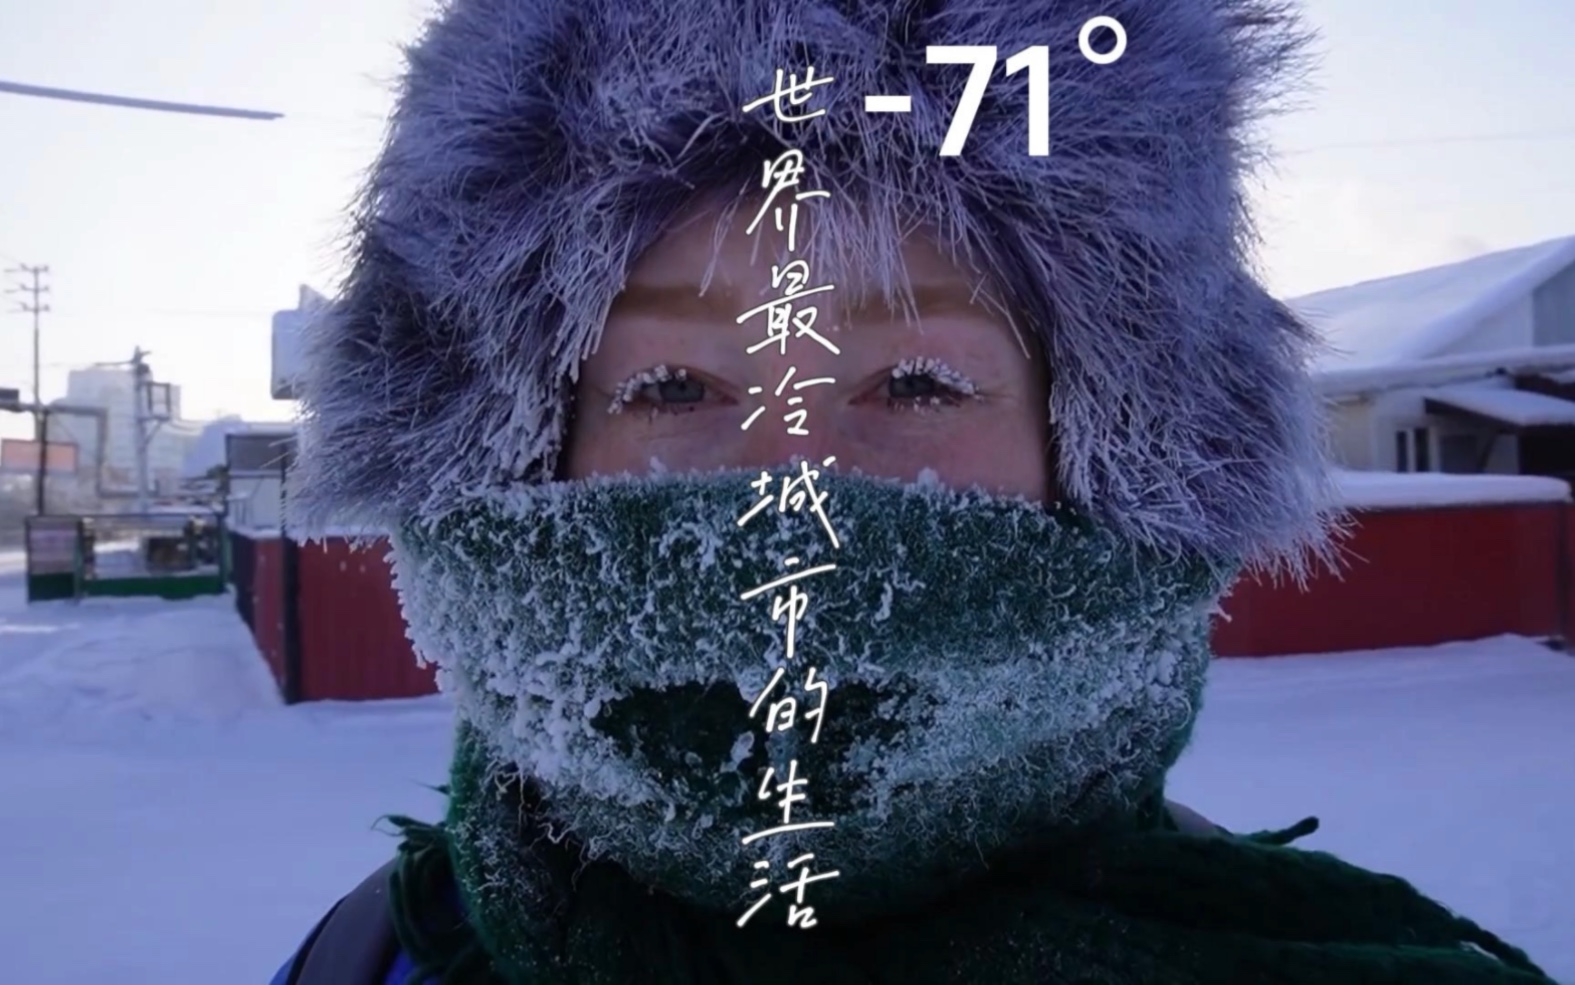 万万没想到,天气预报里说的是真的,原来西伯利亚的冷空气这么猛烈!